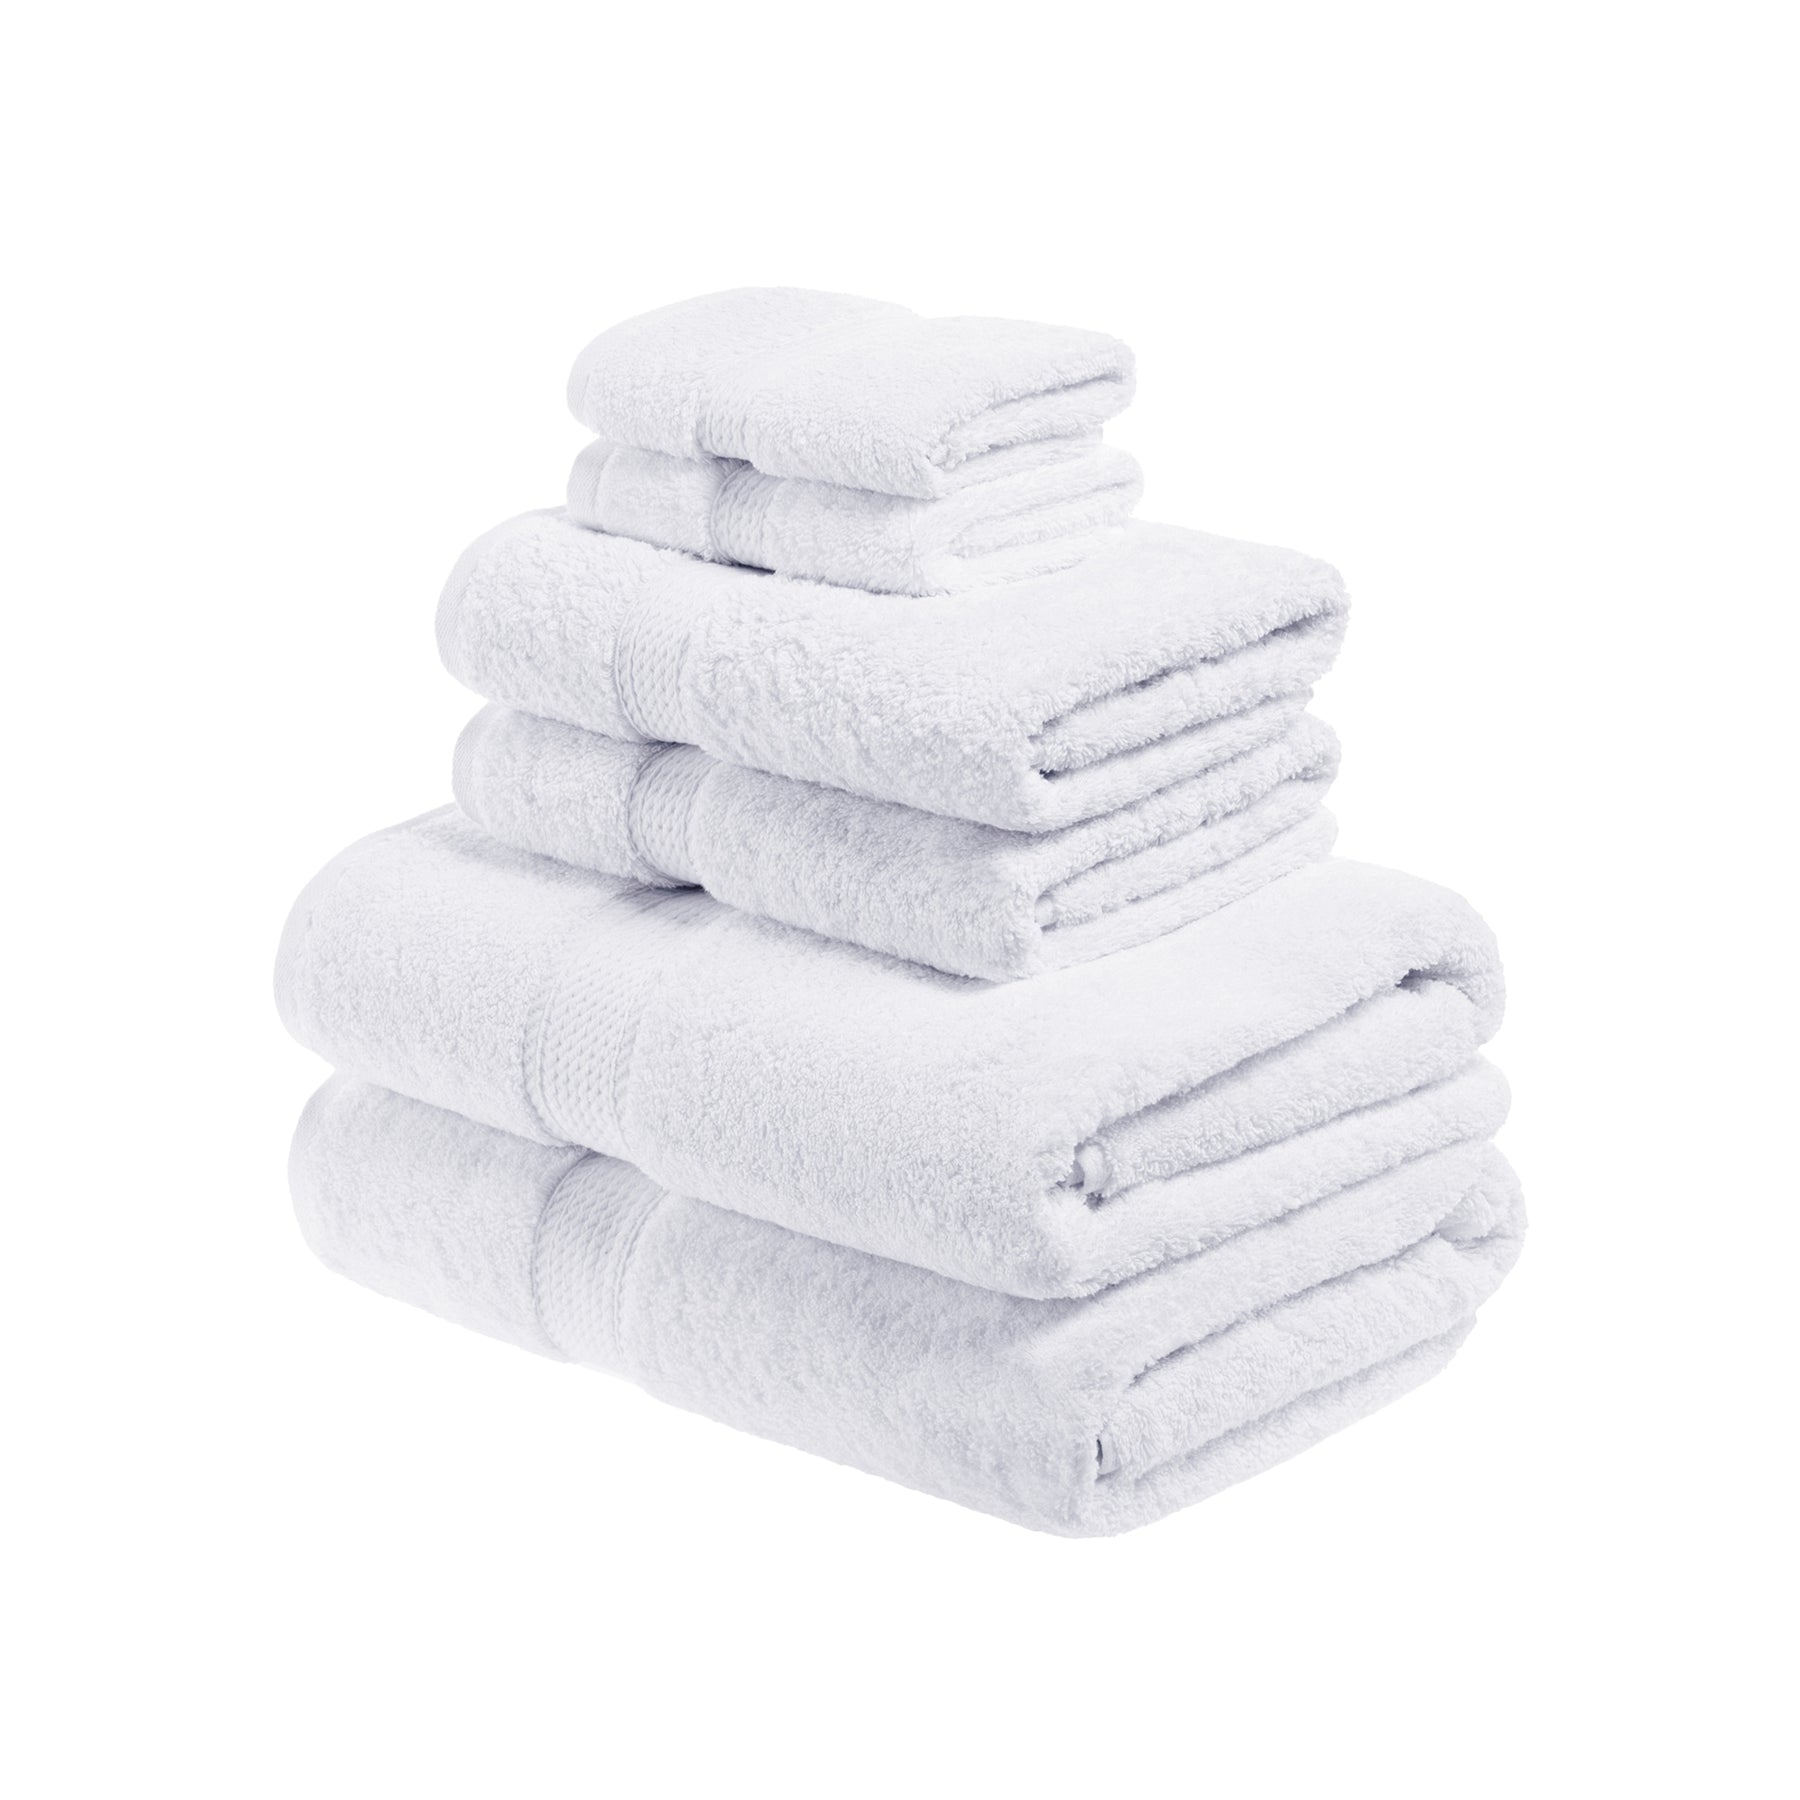 Superior Egyptian Cotton Heavyweight 6 Piece Bath Towel Set - White